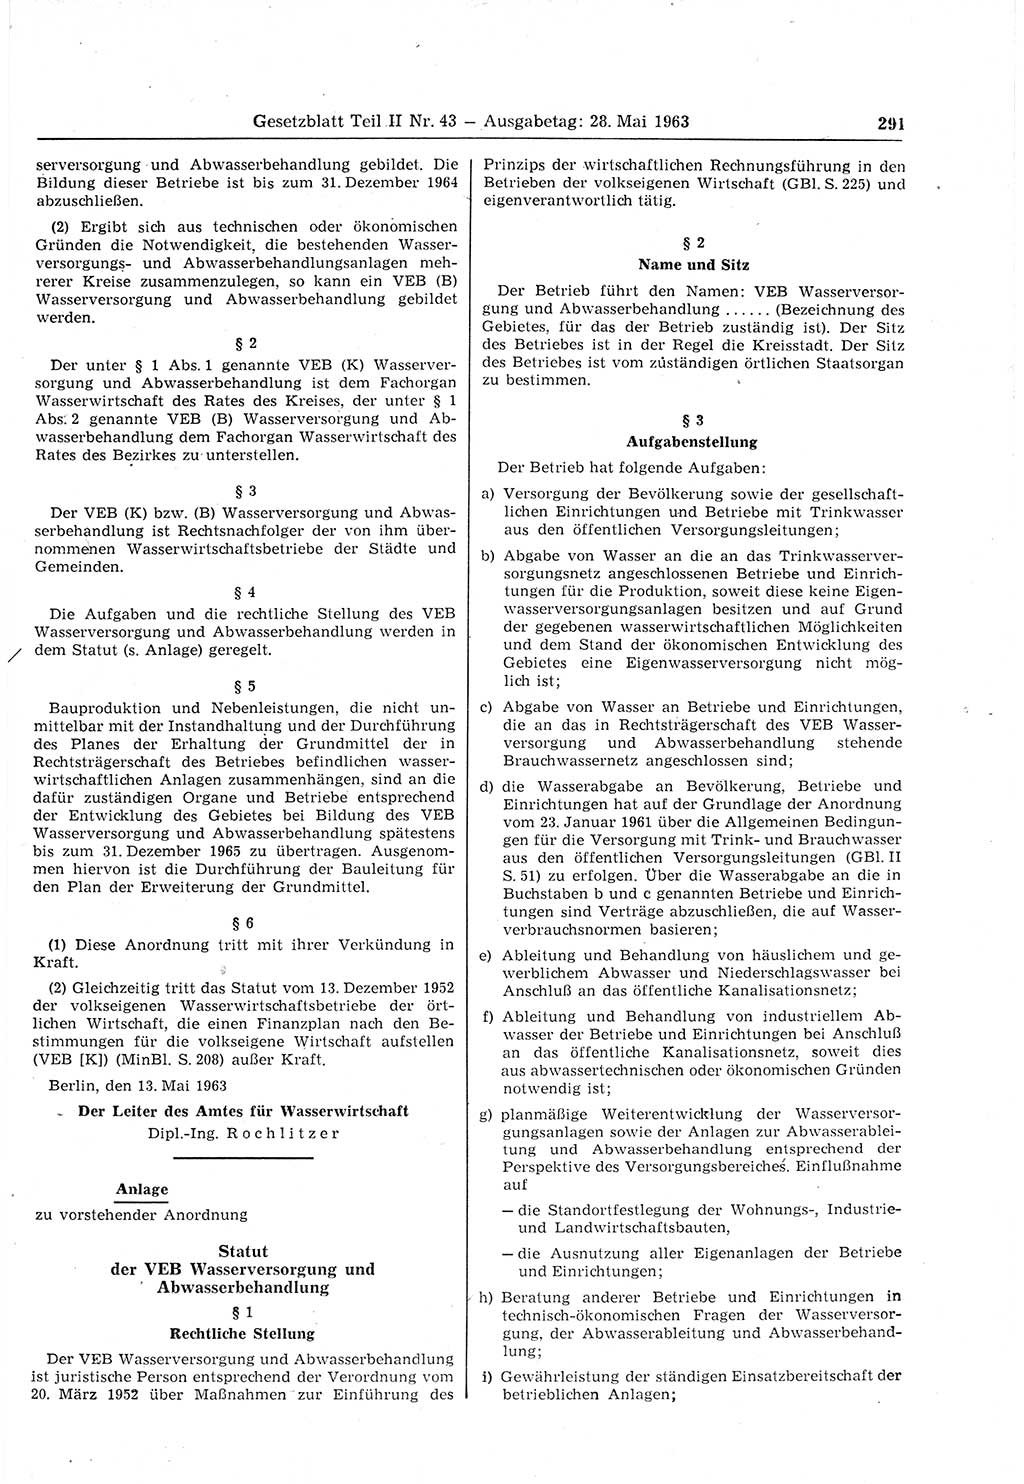 Gesetzblatt (GBl.) der Deutschen Demokratischen Republik (DDR) Teil ⅠⅠ 1963, Seite 291 (GBl. DDR ⅠⅠ 1963, S. 291)